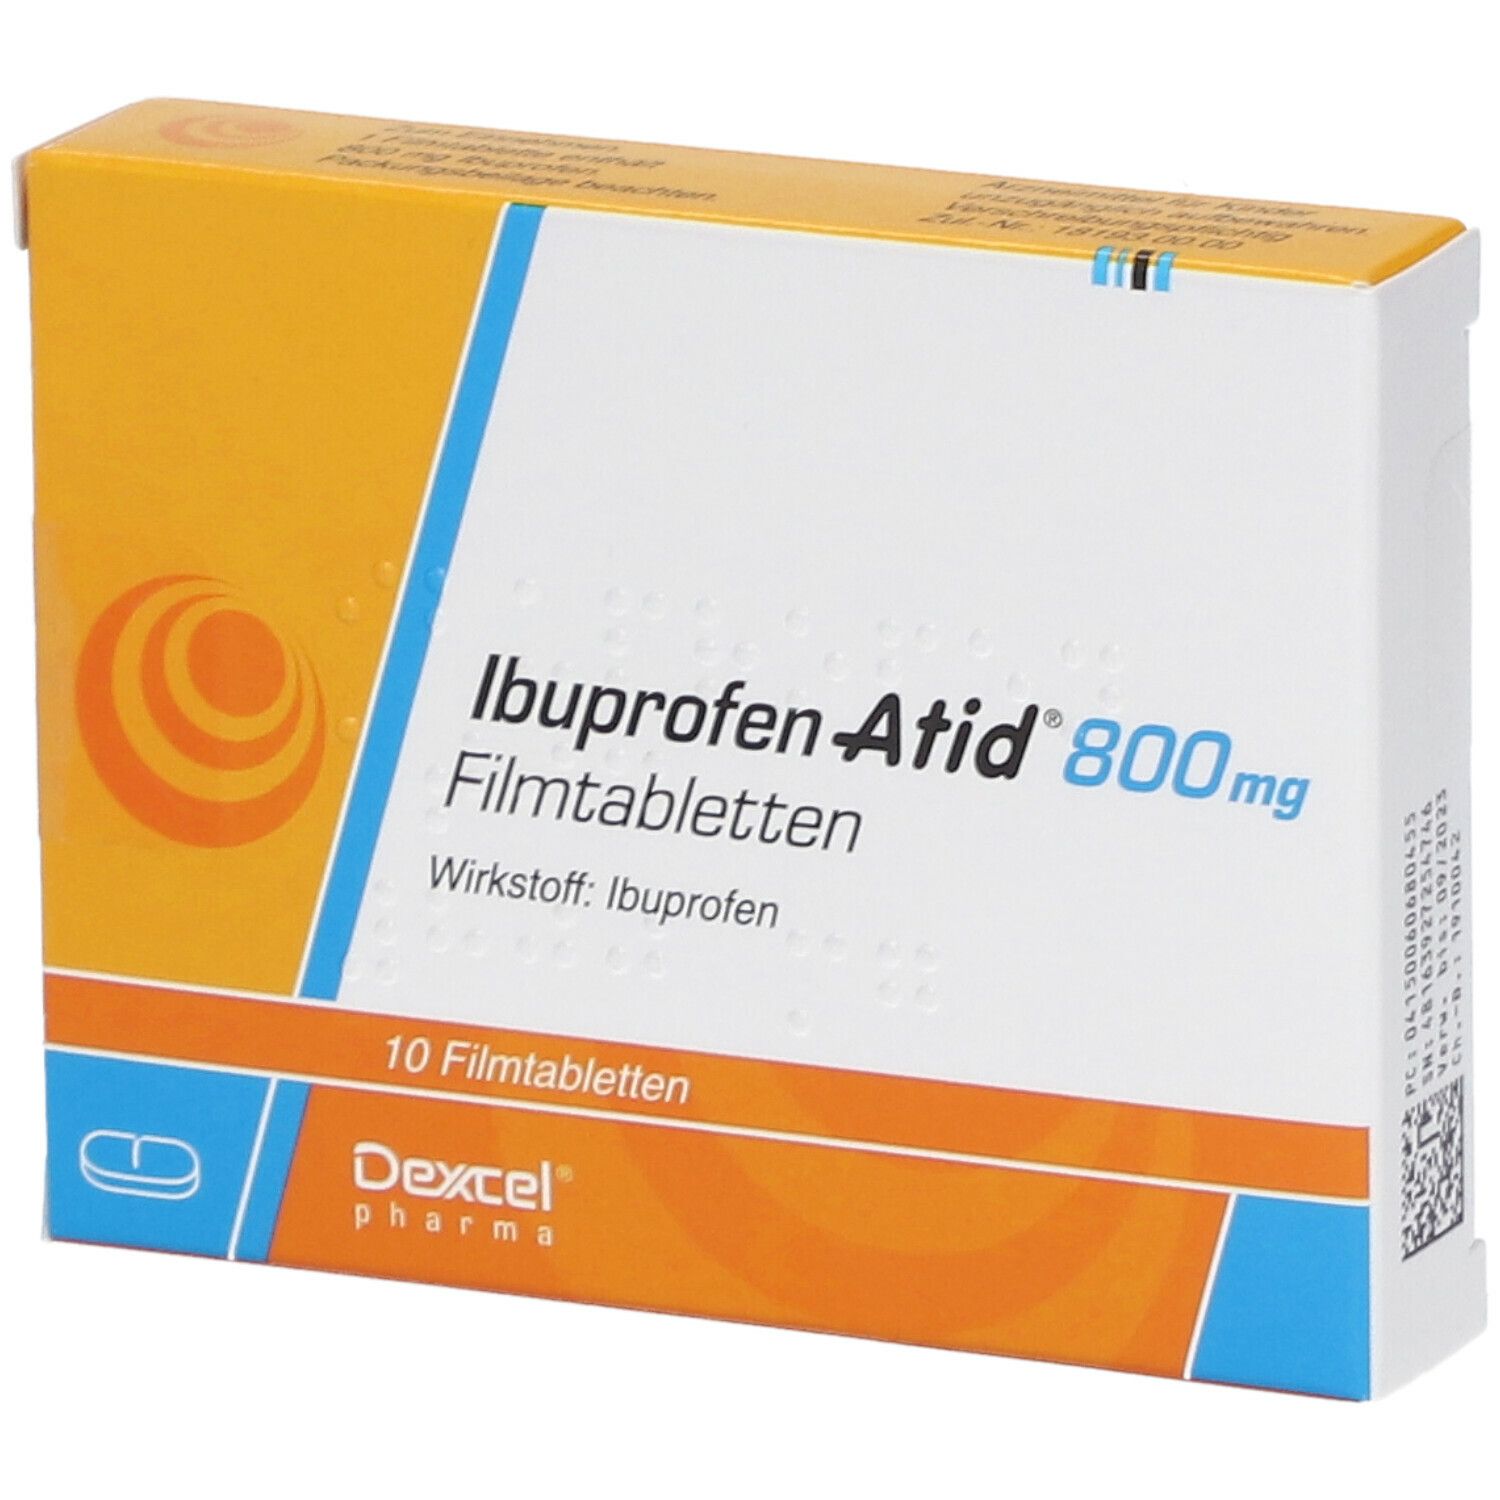 Ibuprofen Atid® 800 mg